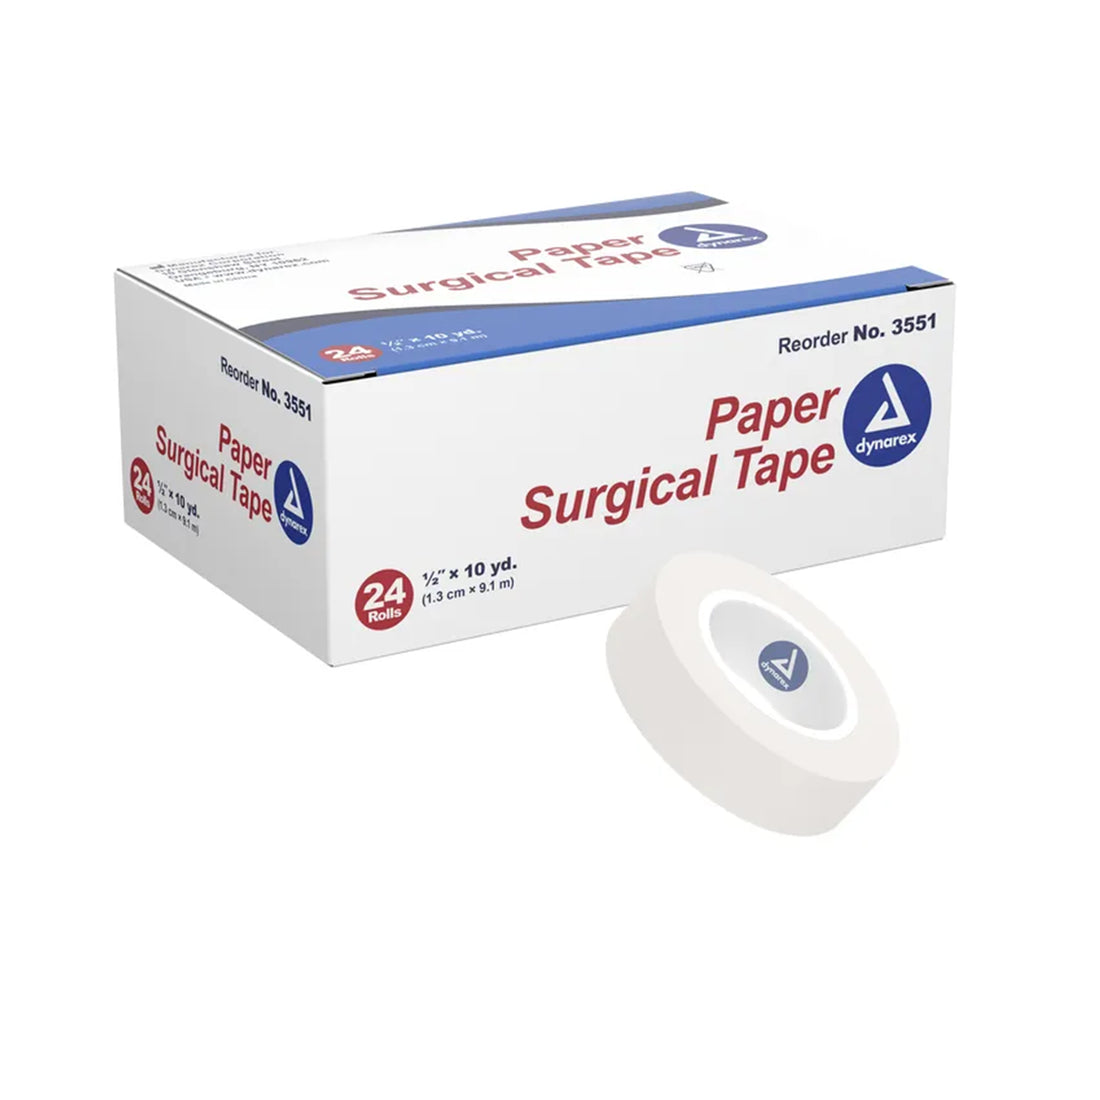 Dynarex Paper Medical Tape